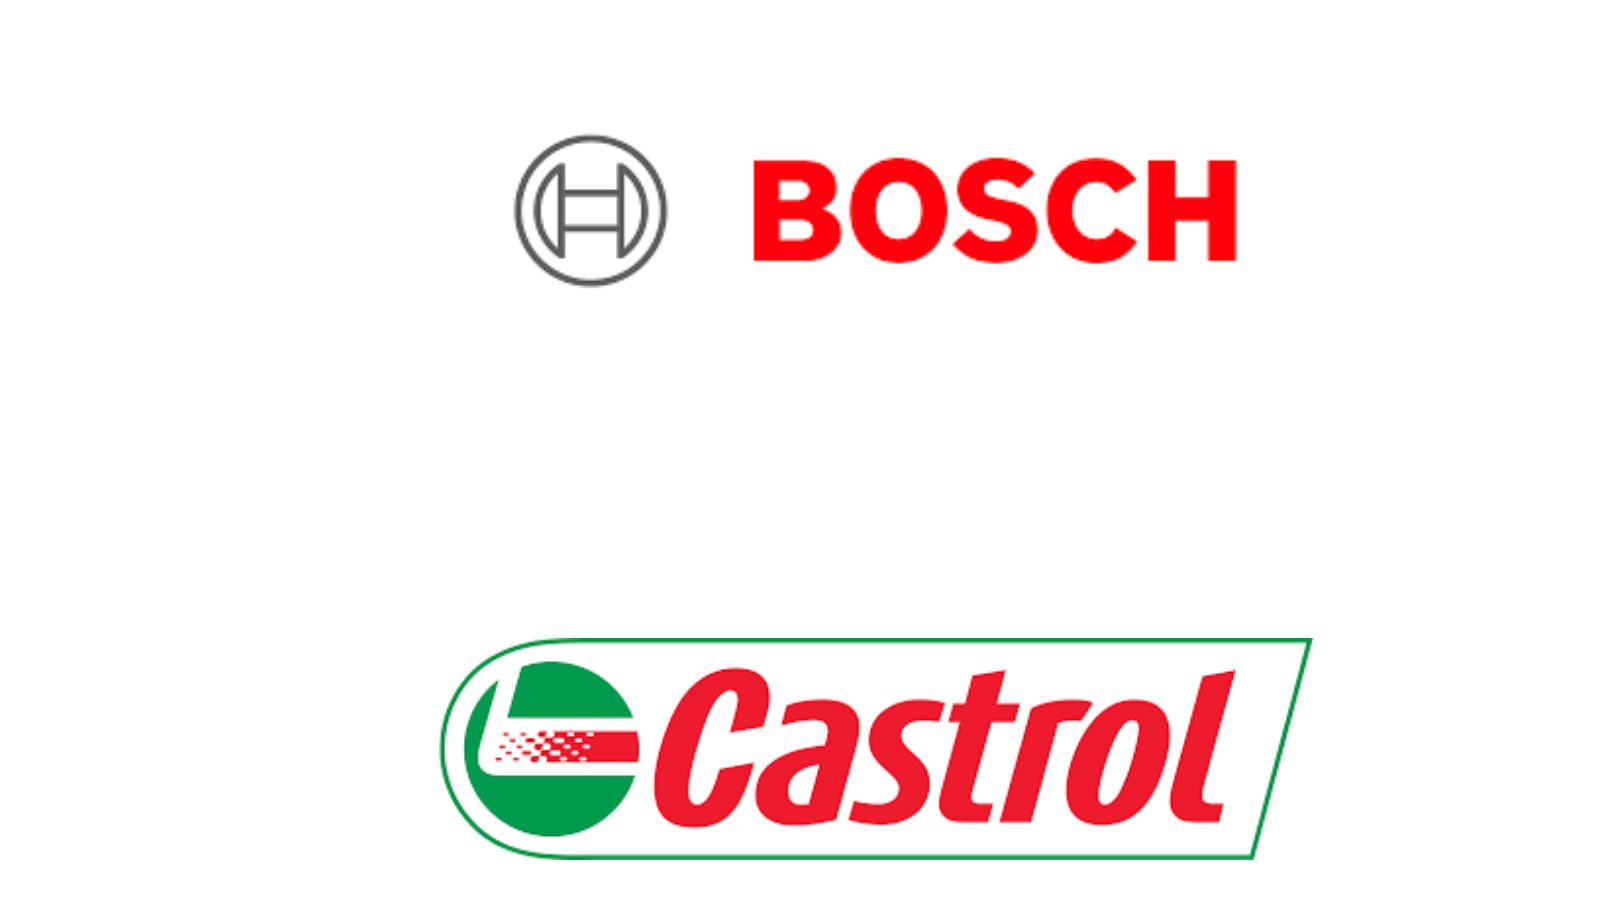 Bosch-Castrol Logo's